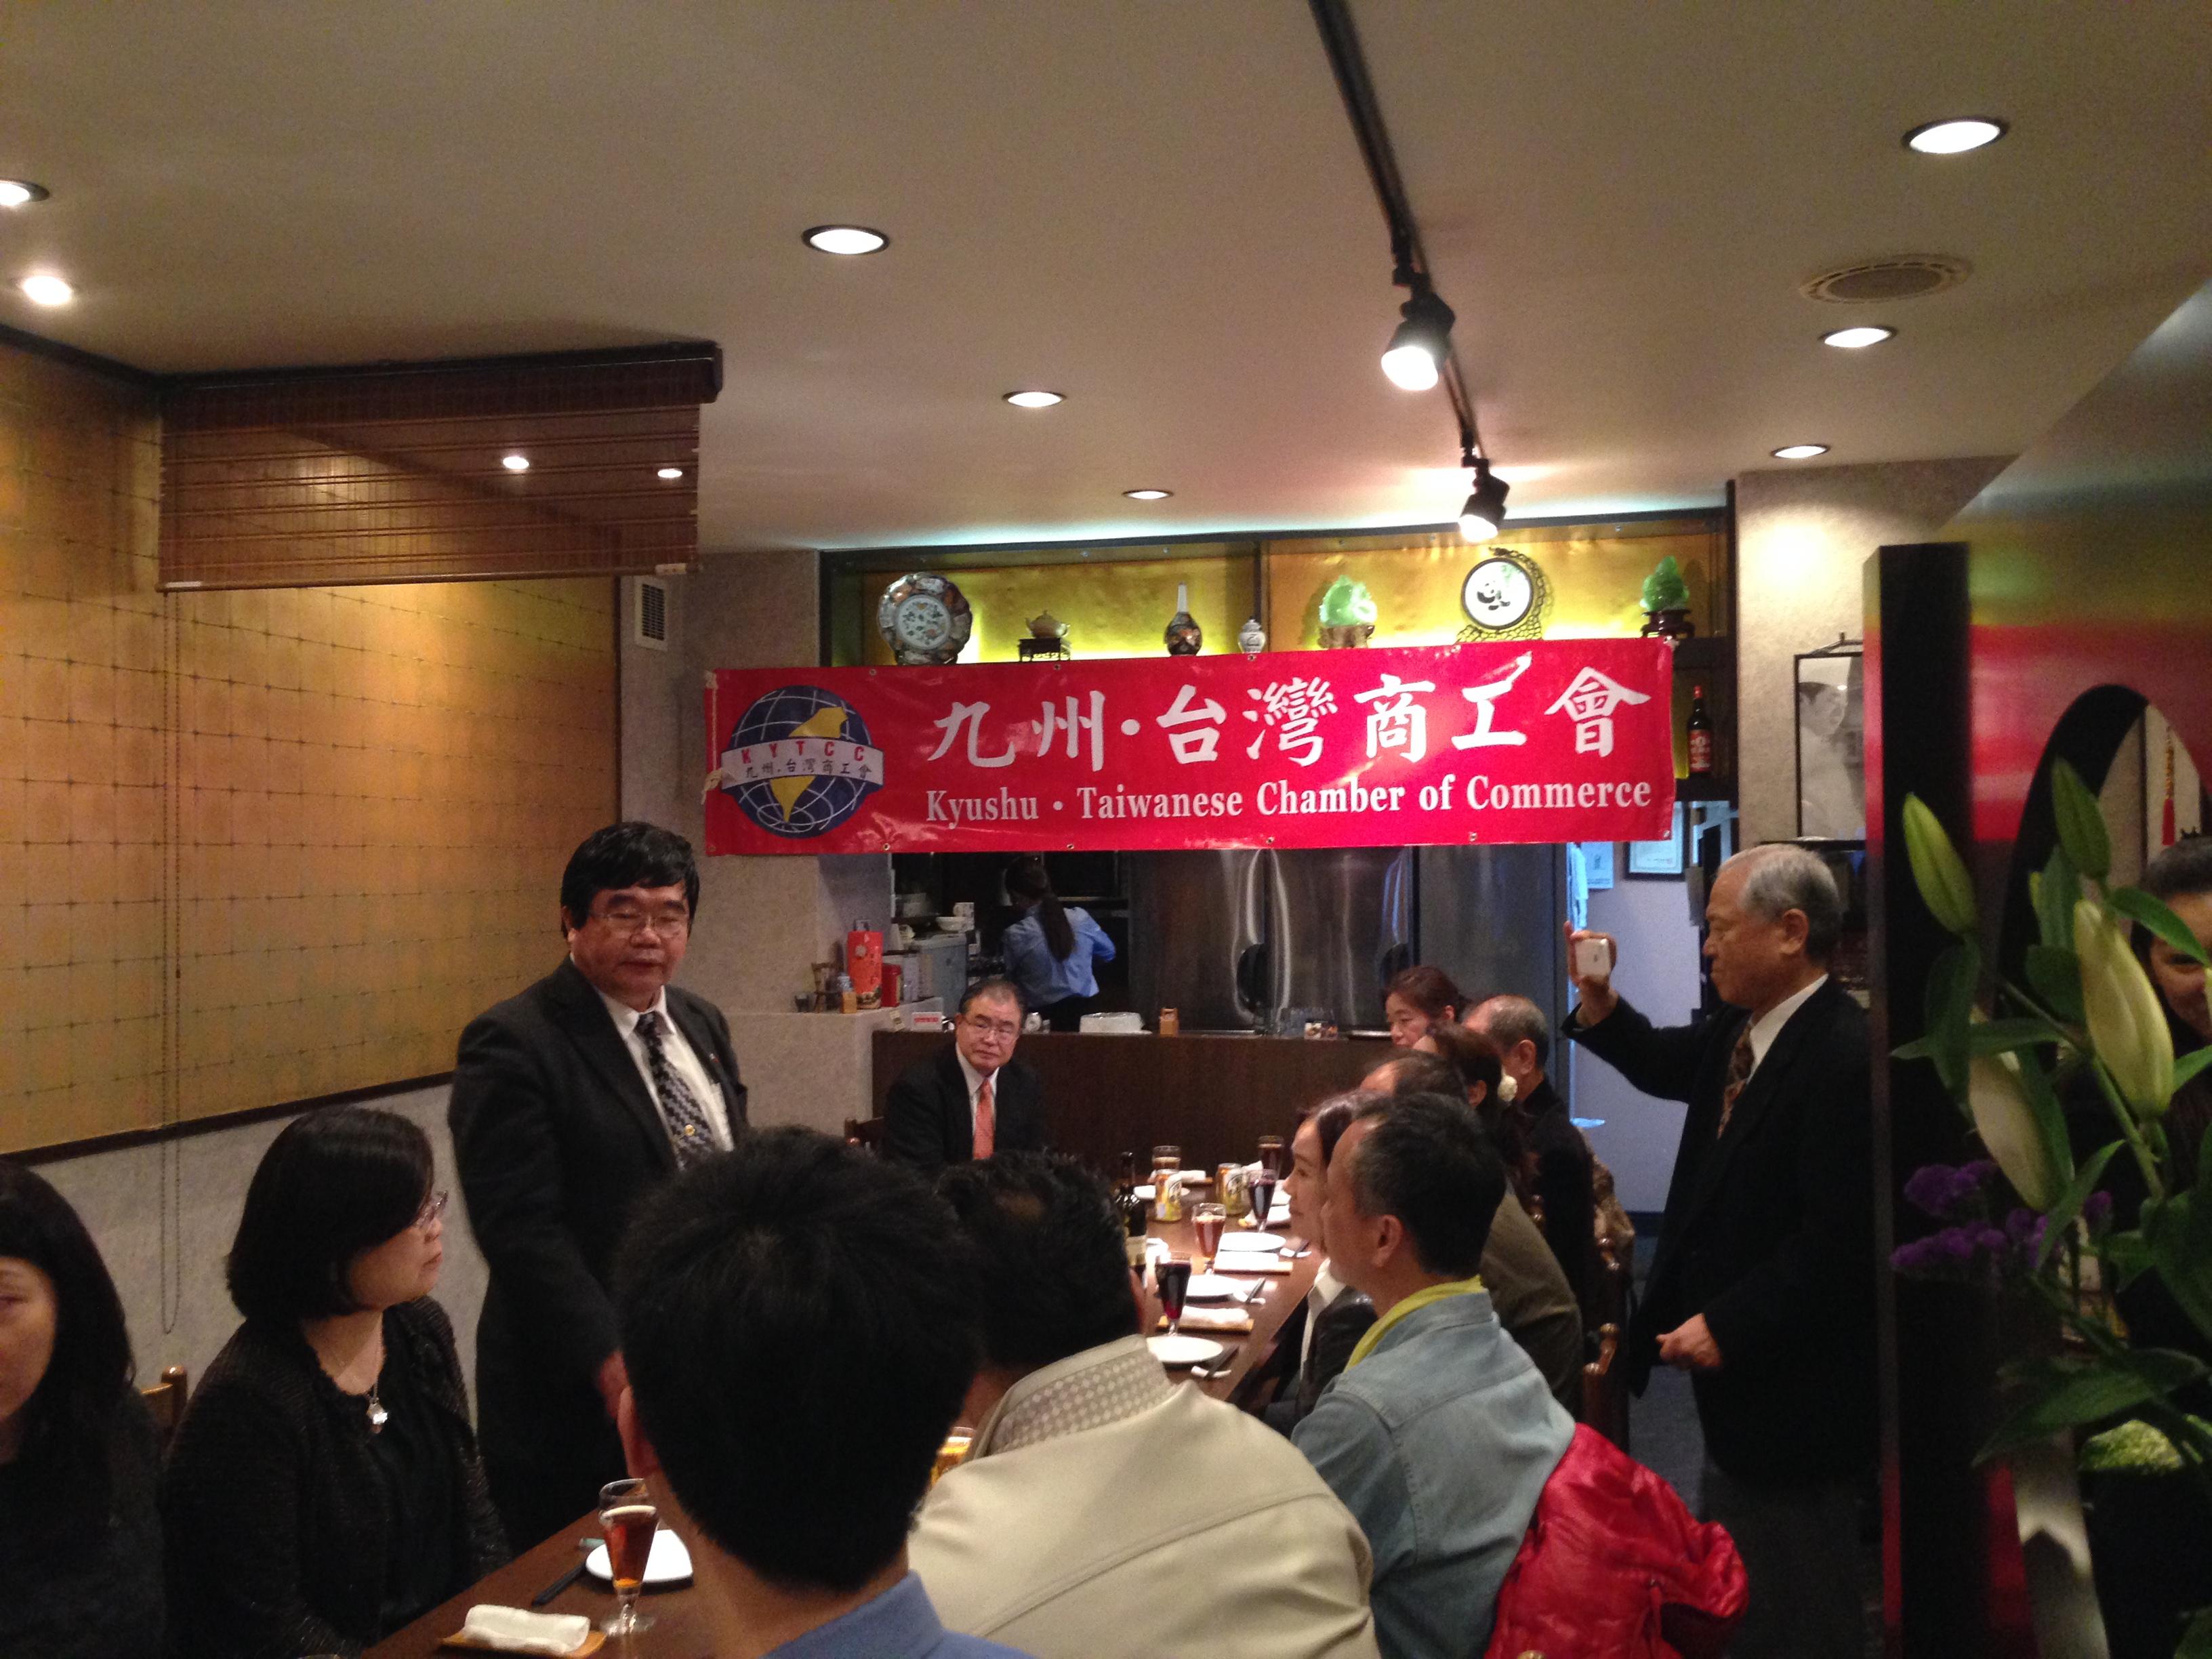 3/27戎総領事が九州台湾商工会食事会に出席した。